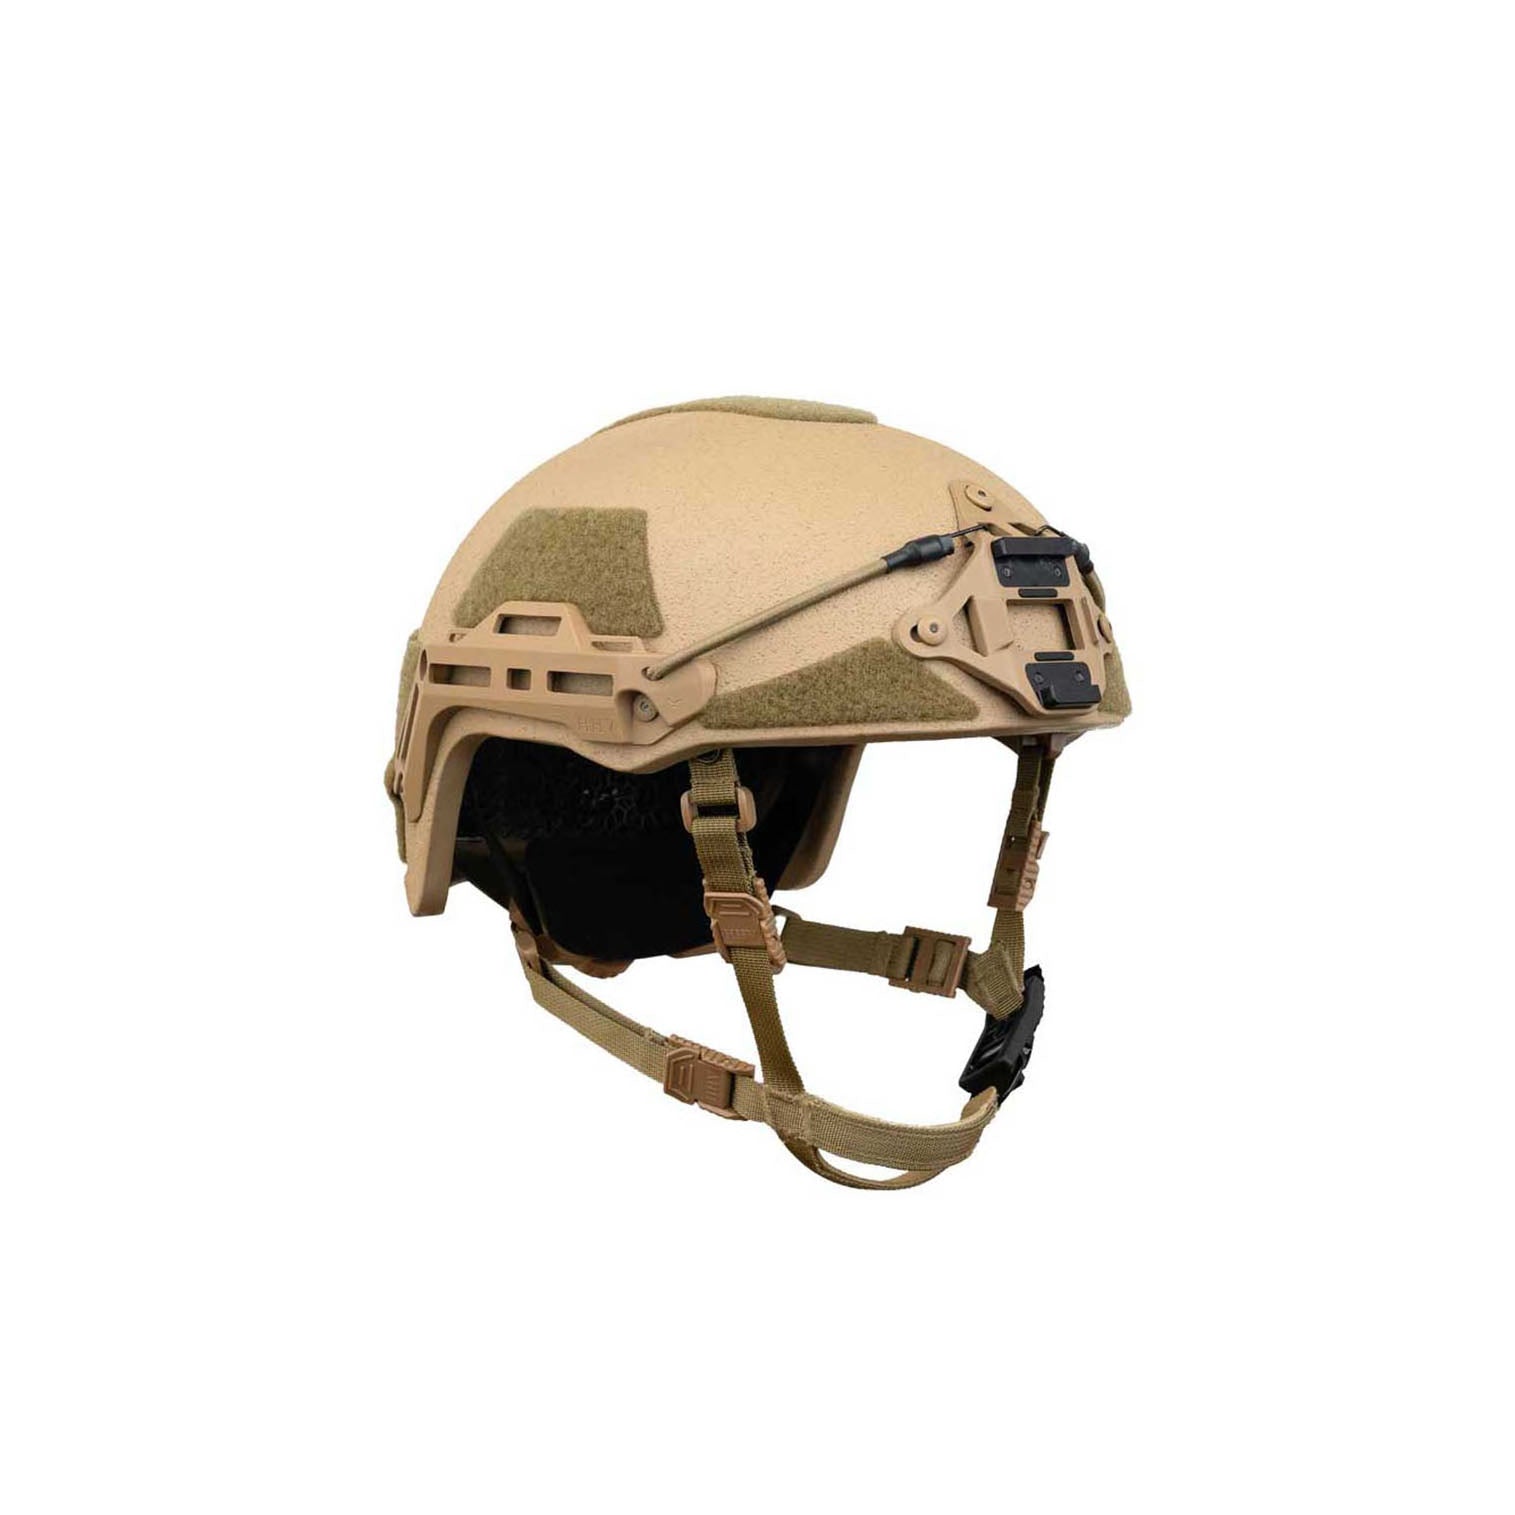 Tan Gen 3 ballistic helmet